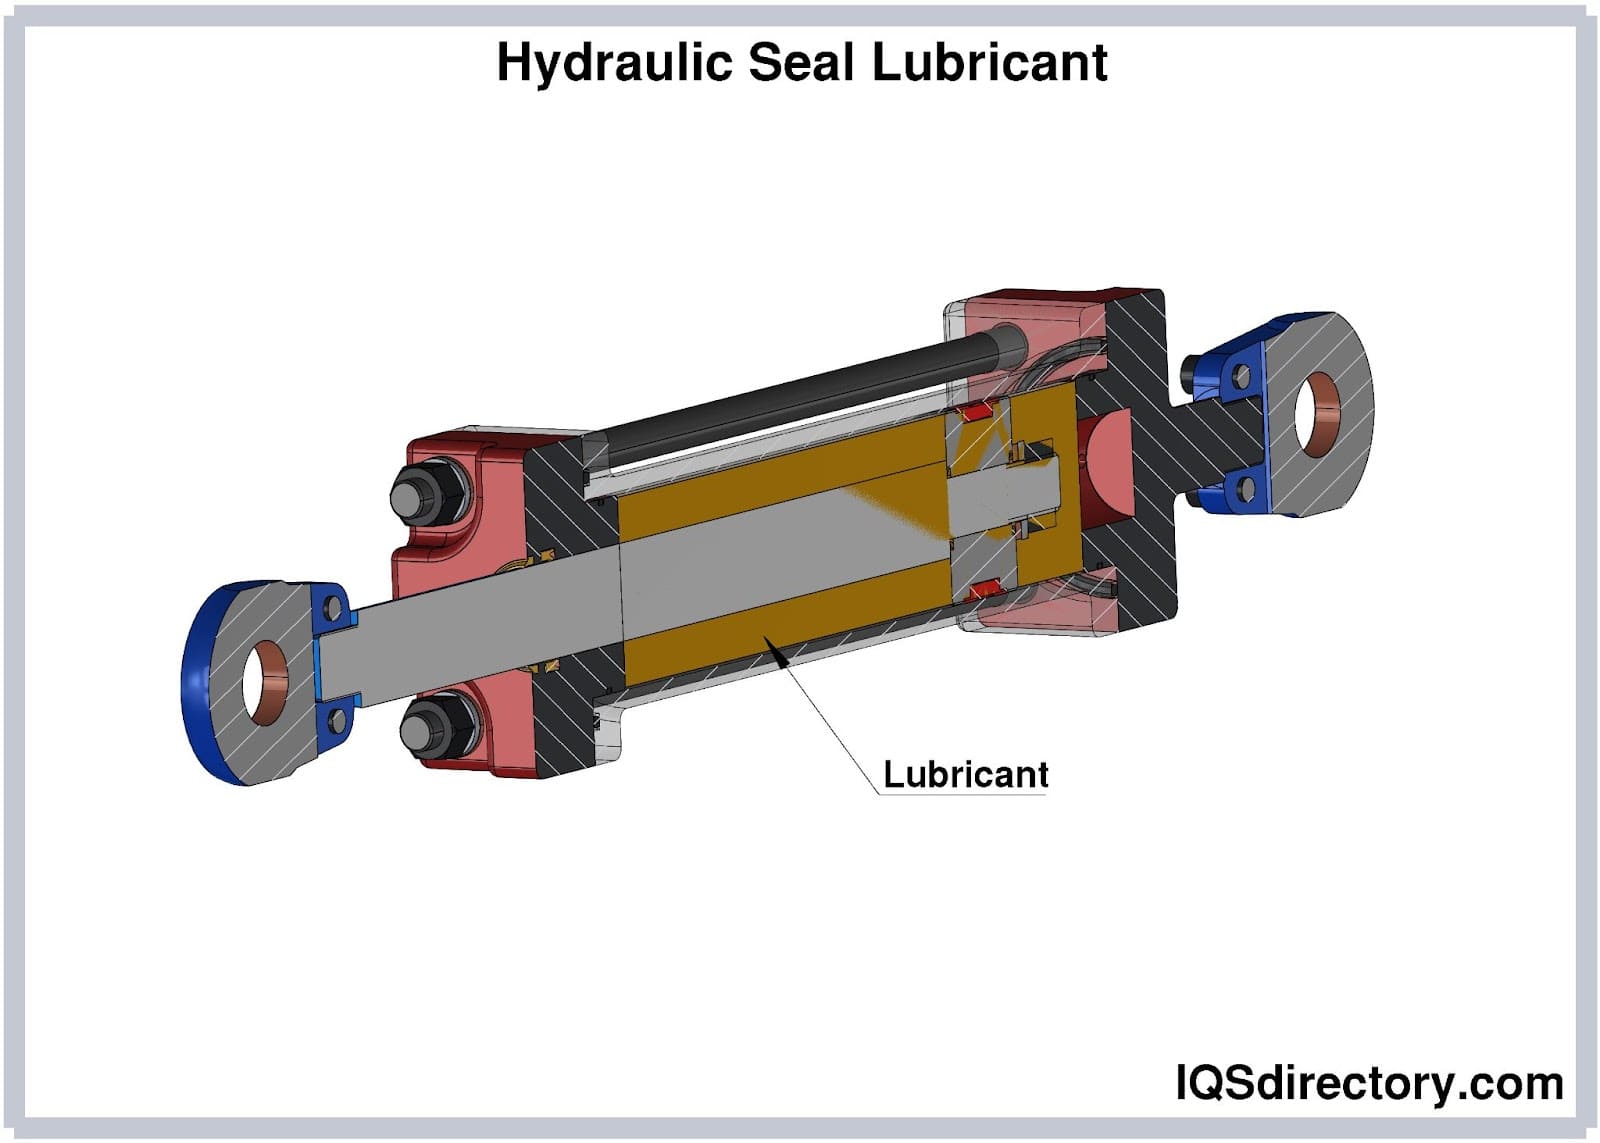 Hydraulic Seal Lubricant